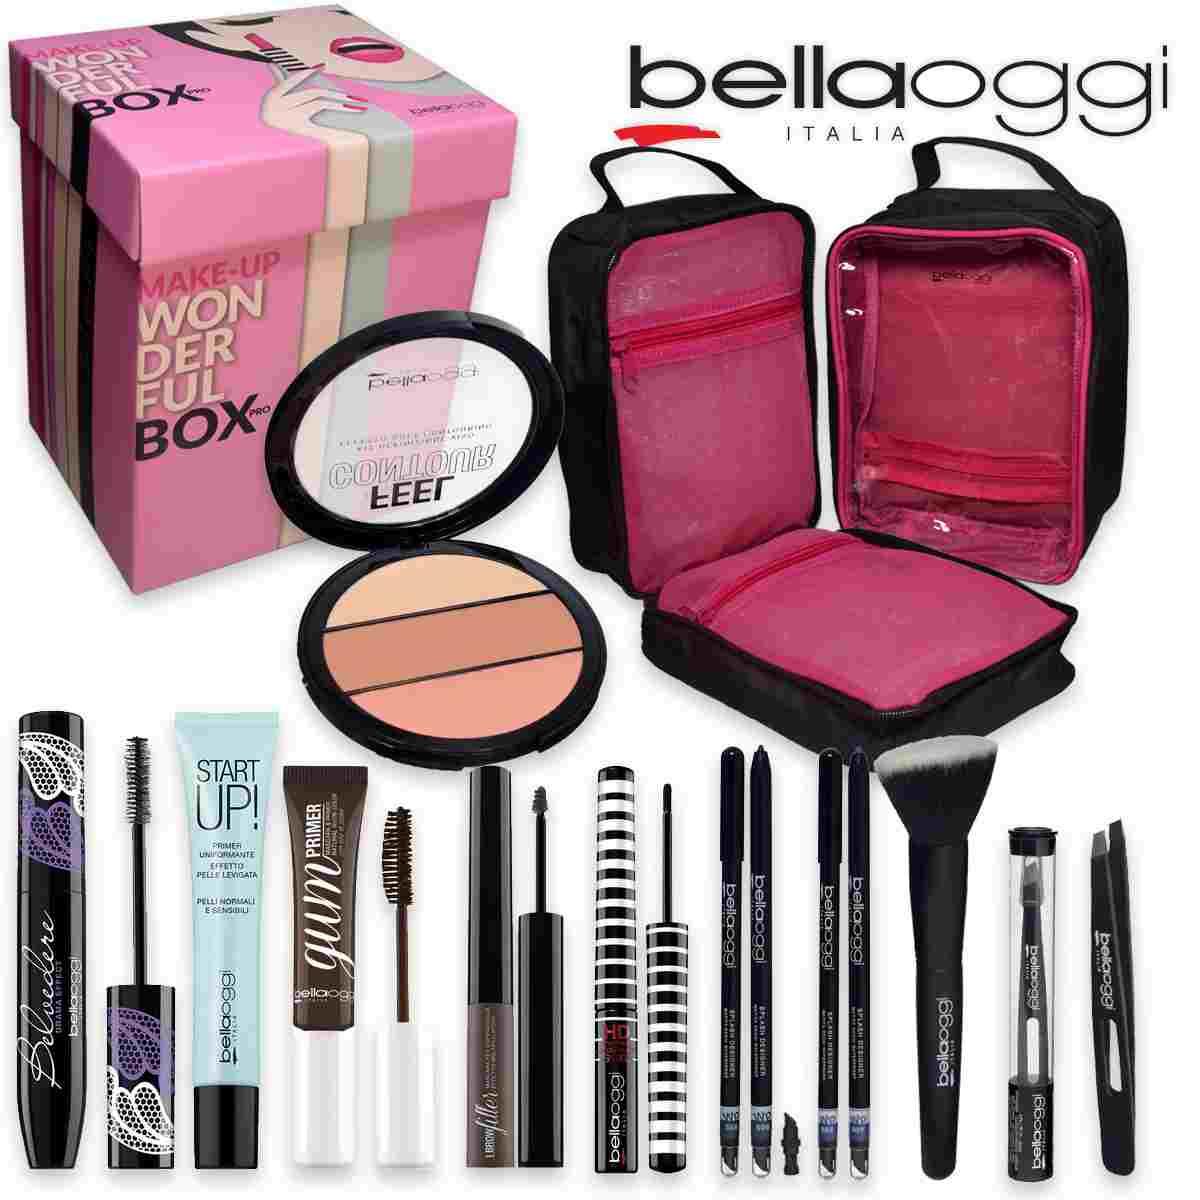 Bella Oggi Wonderful Box Make Up Kit Pochette Regalo Donna 